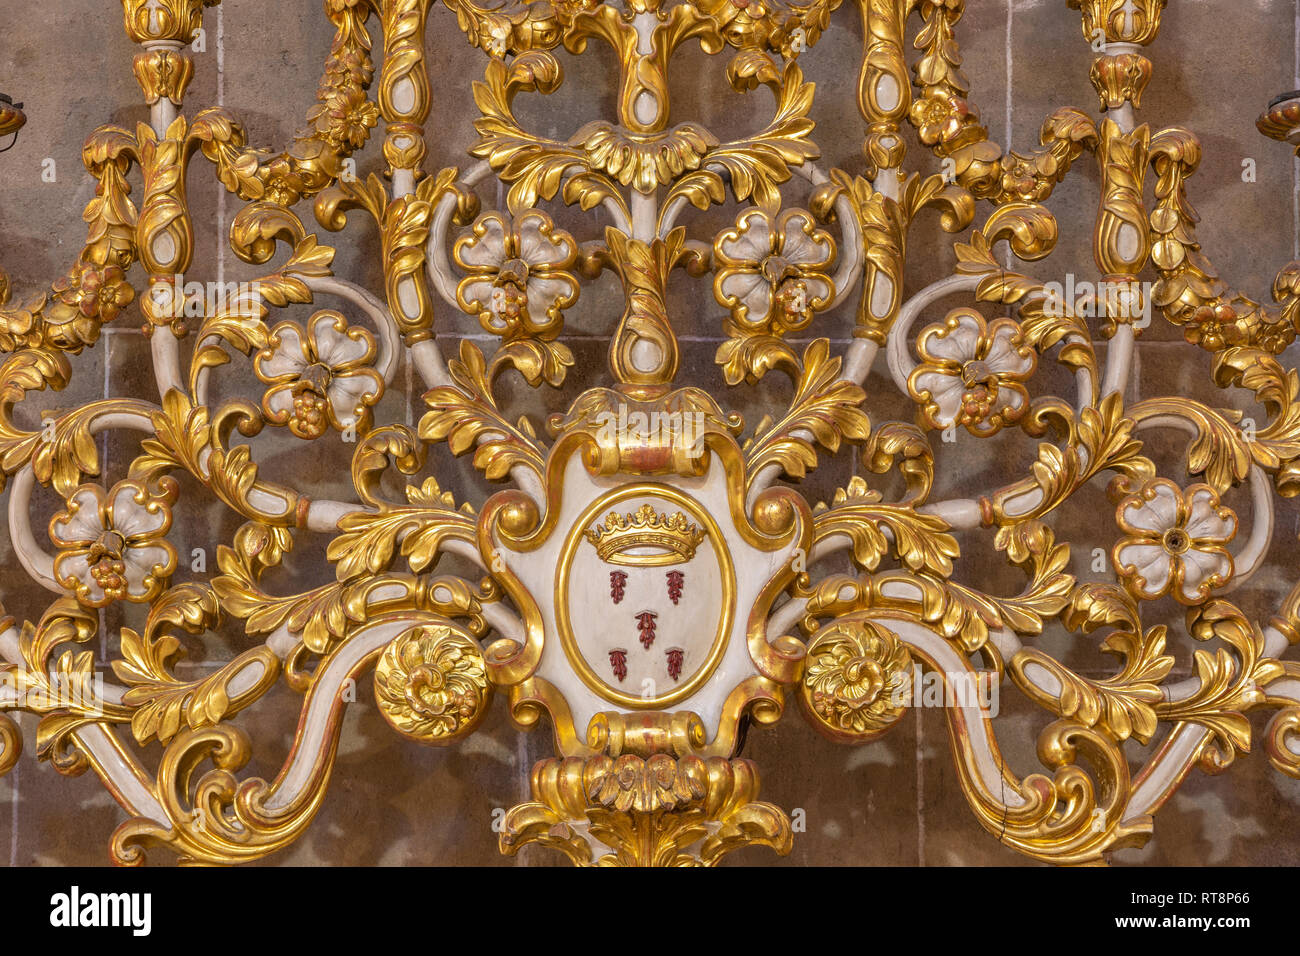 PALMA DE MALLORCA, España - 29 de enero de 2019: el detalle del barroco candelabro Esglesia en la iglesia de la Inmaculada Concepción. Foto de stock